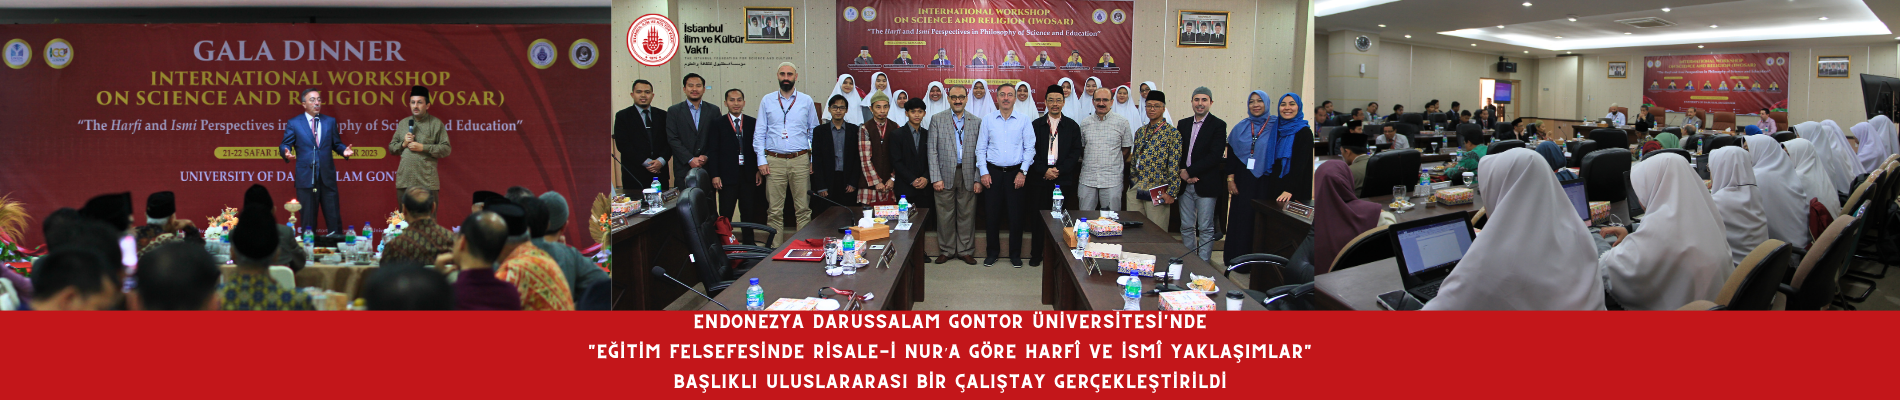 Endonezya Darussalam Gontor Üniversitesinde Eğitim Felsefesinde Risale-i Nur’a göre Harfî ve İsmî Yaklaşımlar Başlıklı Uluslararası Bir Çalıştay Gerçekleştirildi